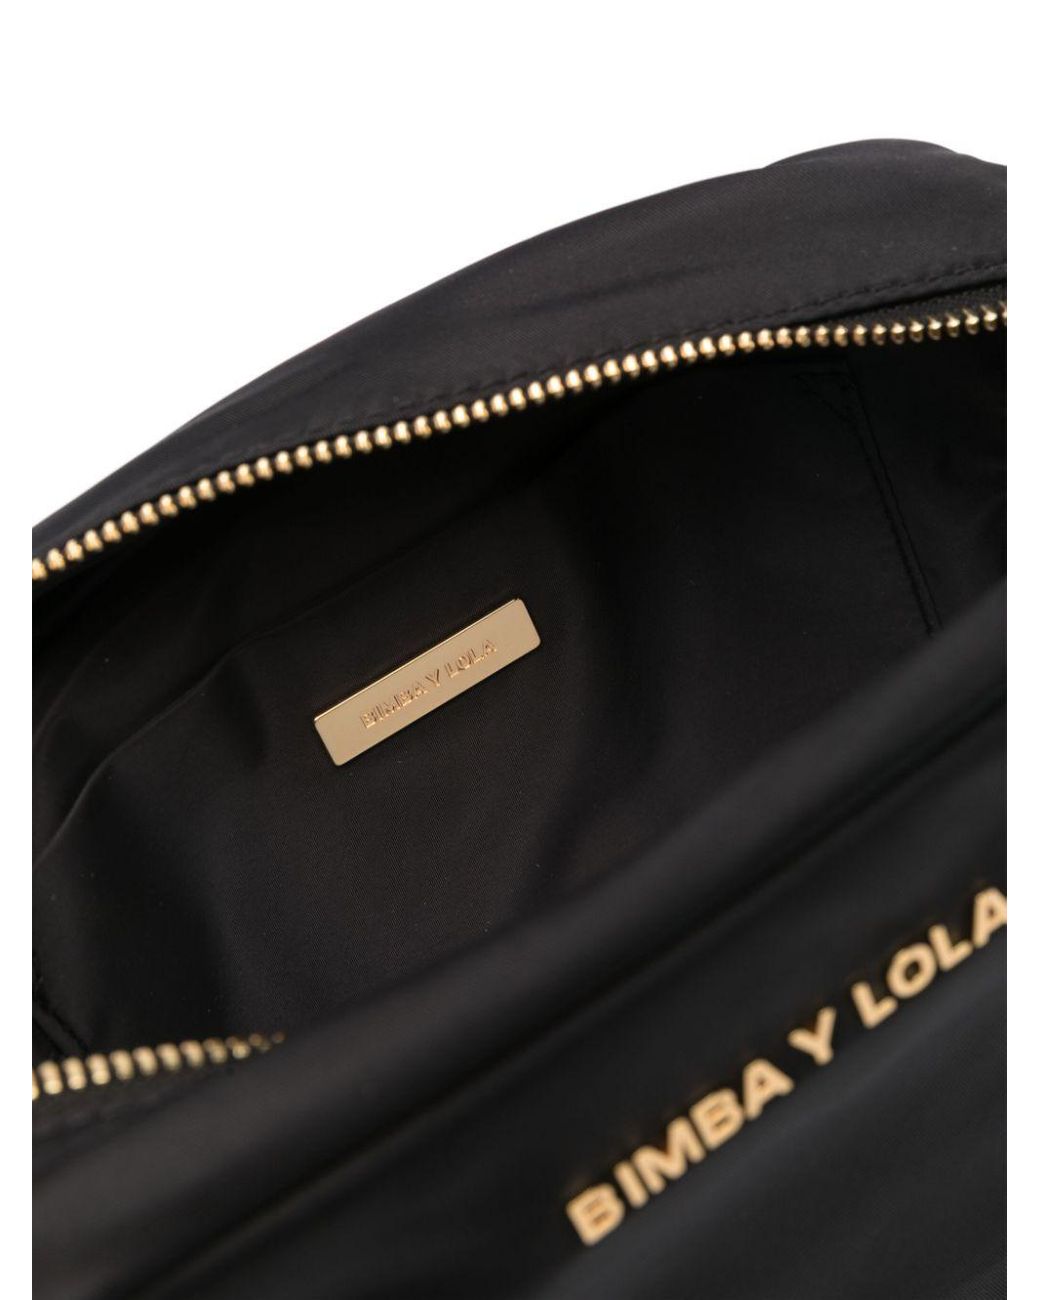 2020 Spain Bolsos Bimba Y Lola Bag Girl Escolar Women Messenger Handbag  Bimbaylola Bag Bolsos Lady Crossbody Bag | Wish